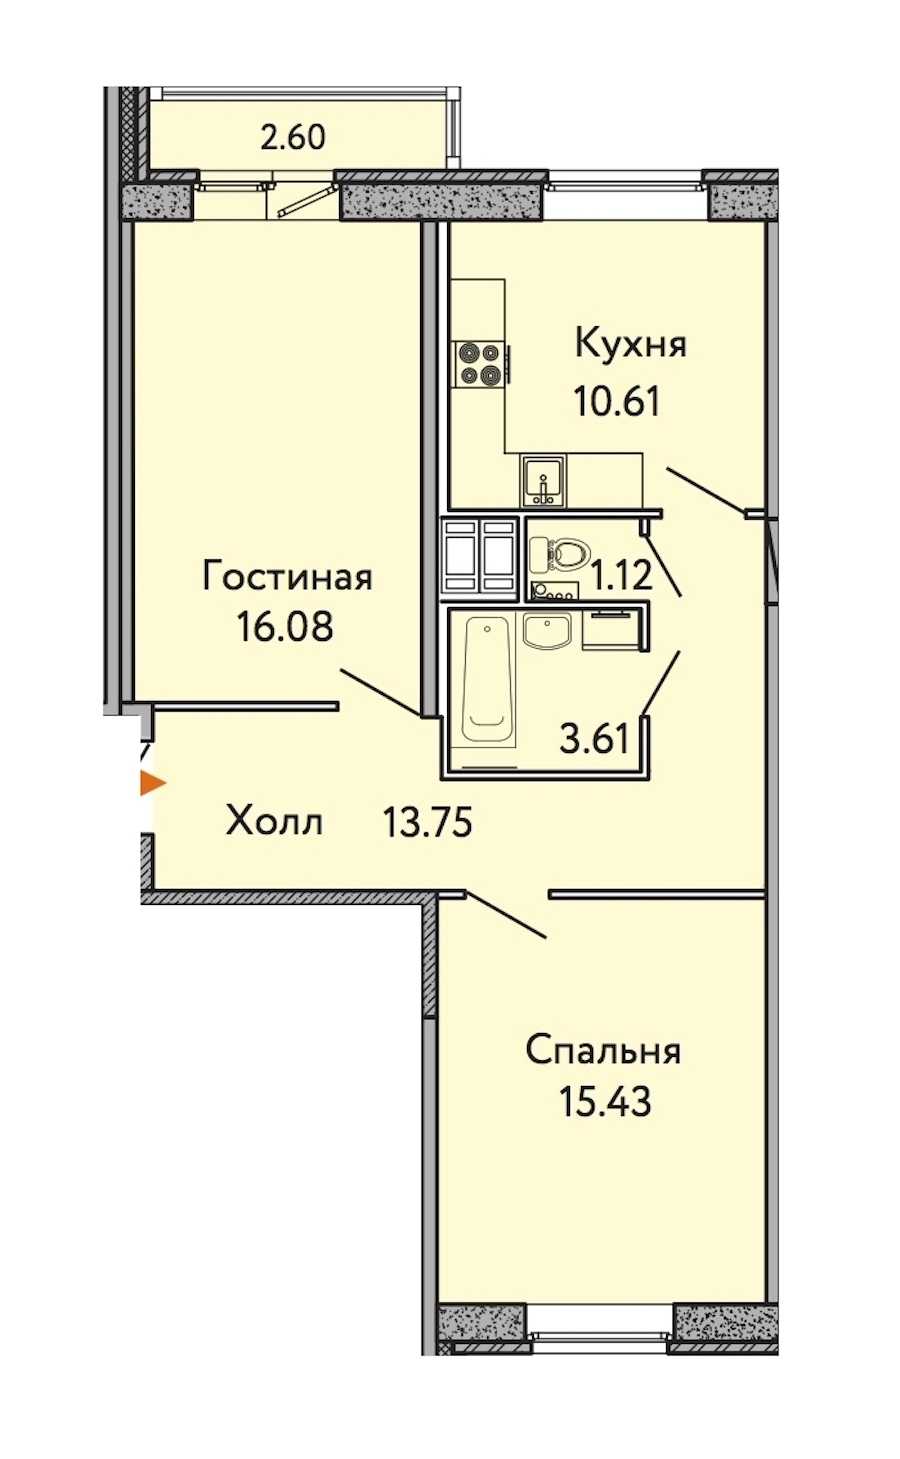 Двухкомнатная квартира в : площадь 61.38 м2 , этаж: 8 – купить в Санкт-Петербурге